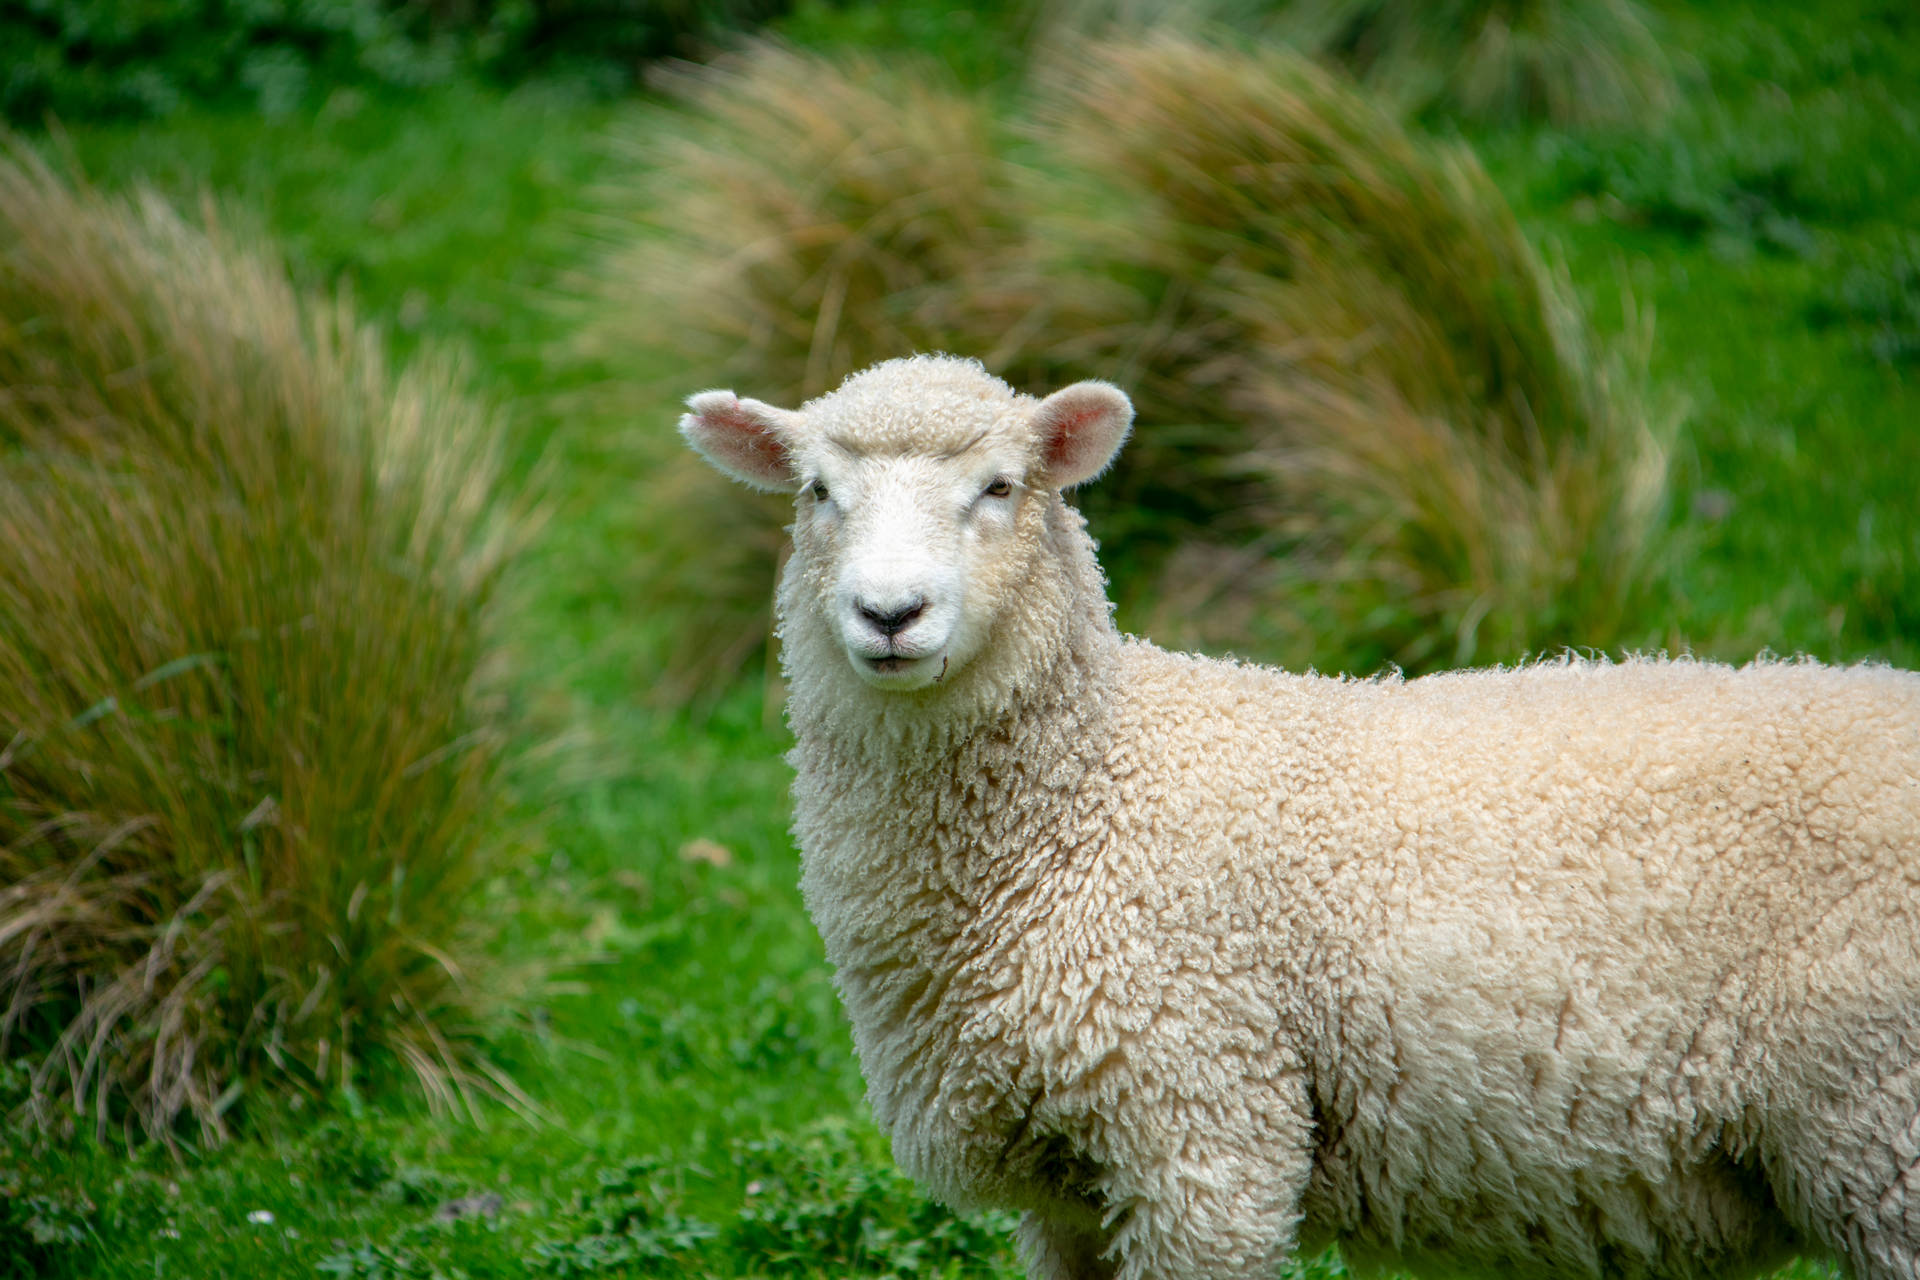 Sheep In Grassy Soil